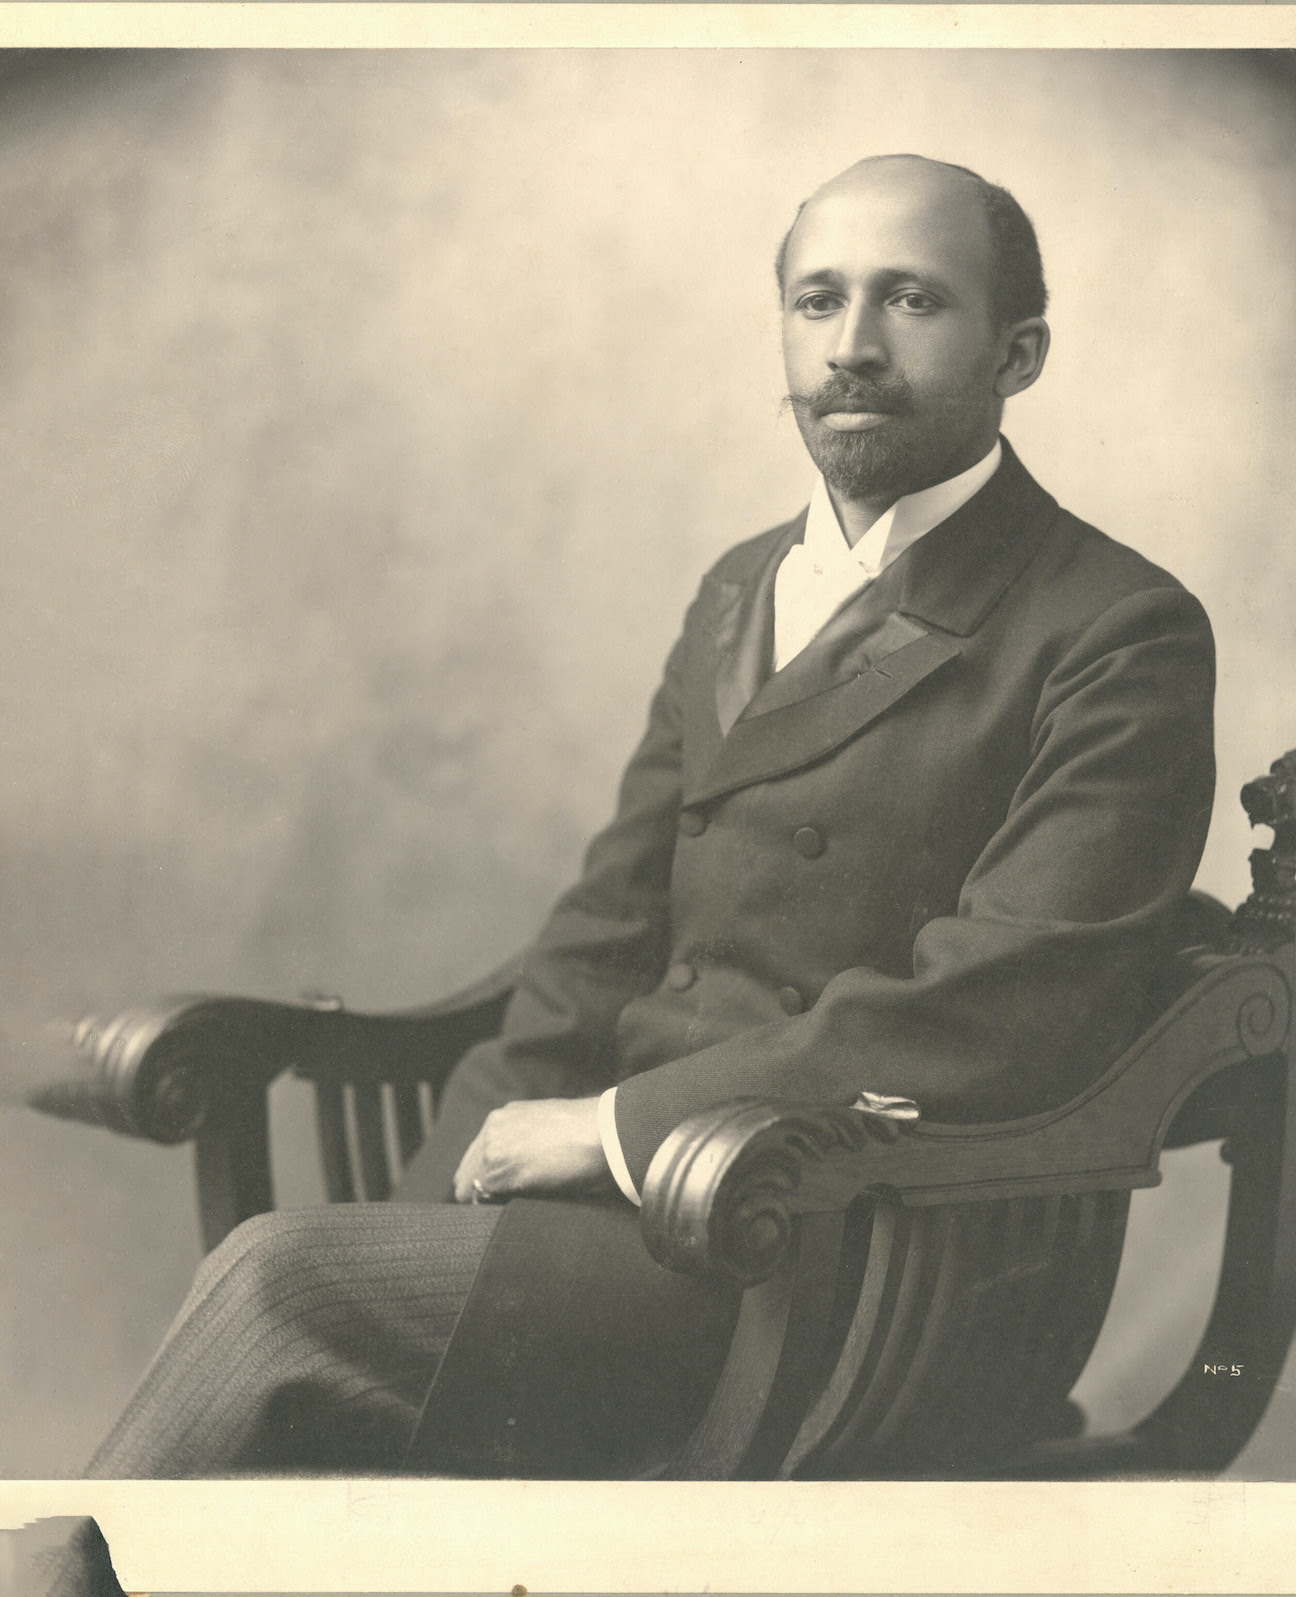 W.E.B. Du Bois photo provided by WNED